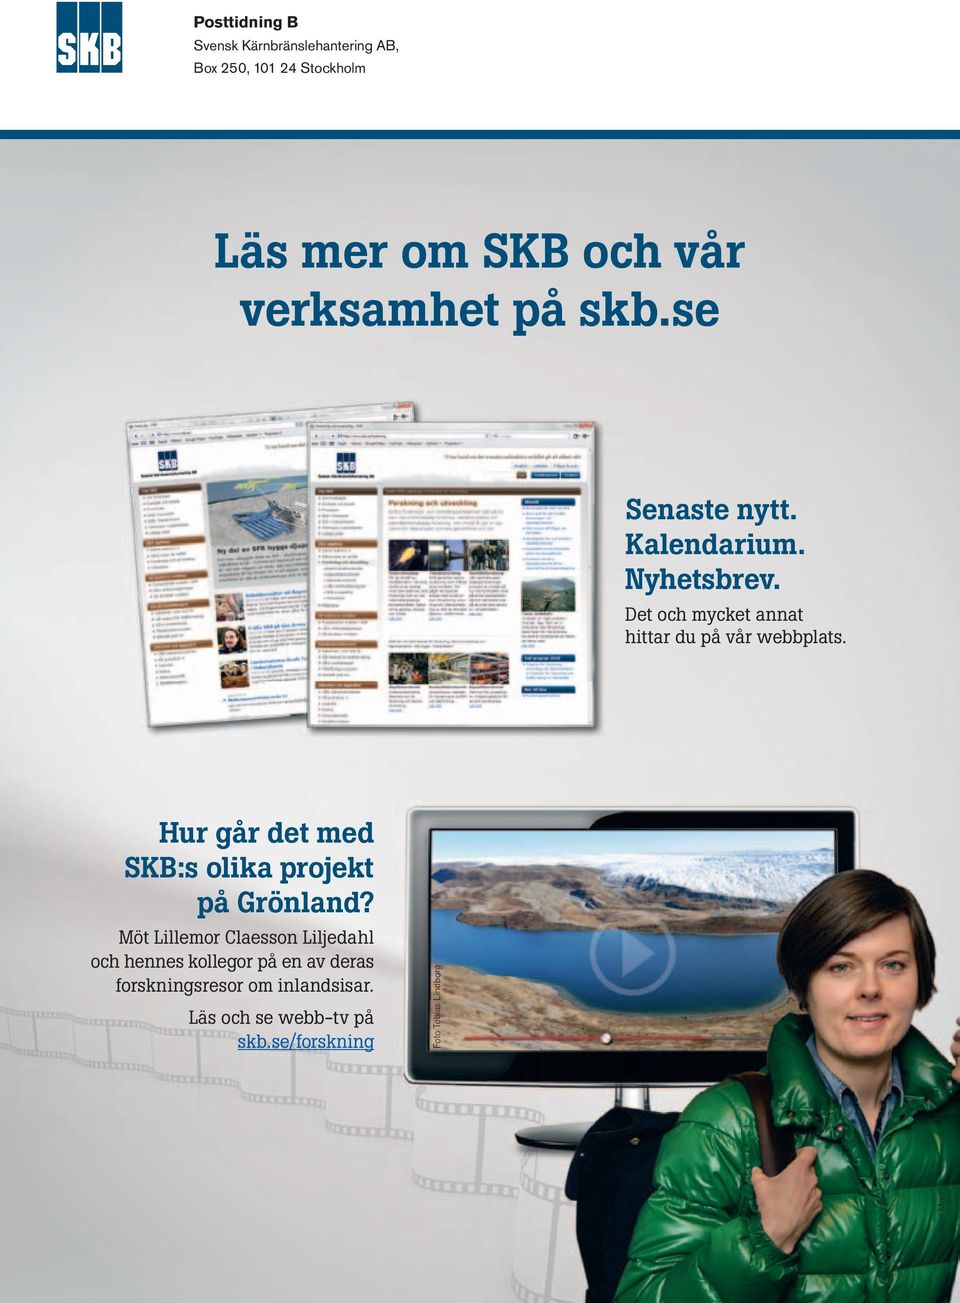 Hur går det med SKB:s olika projekt på Grönland?